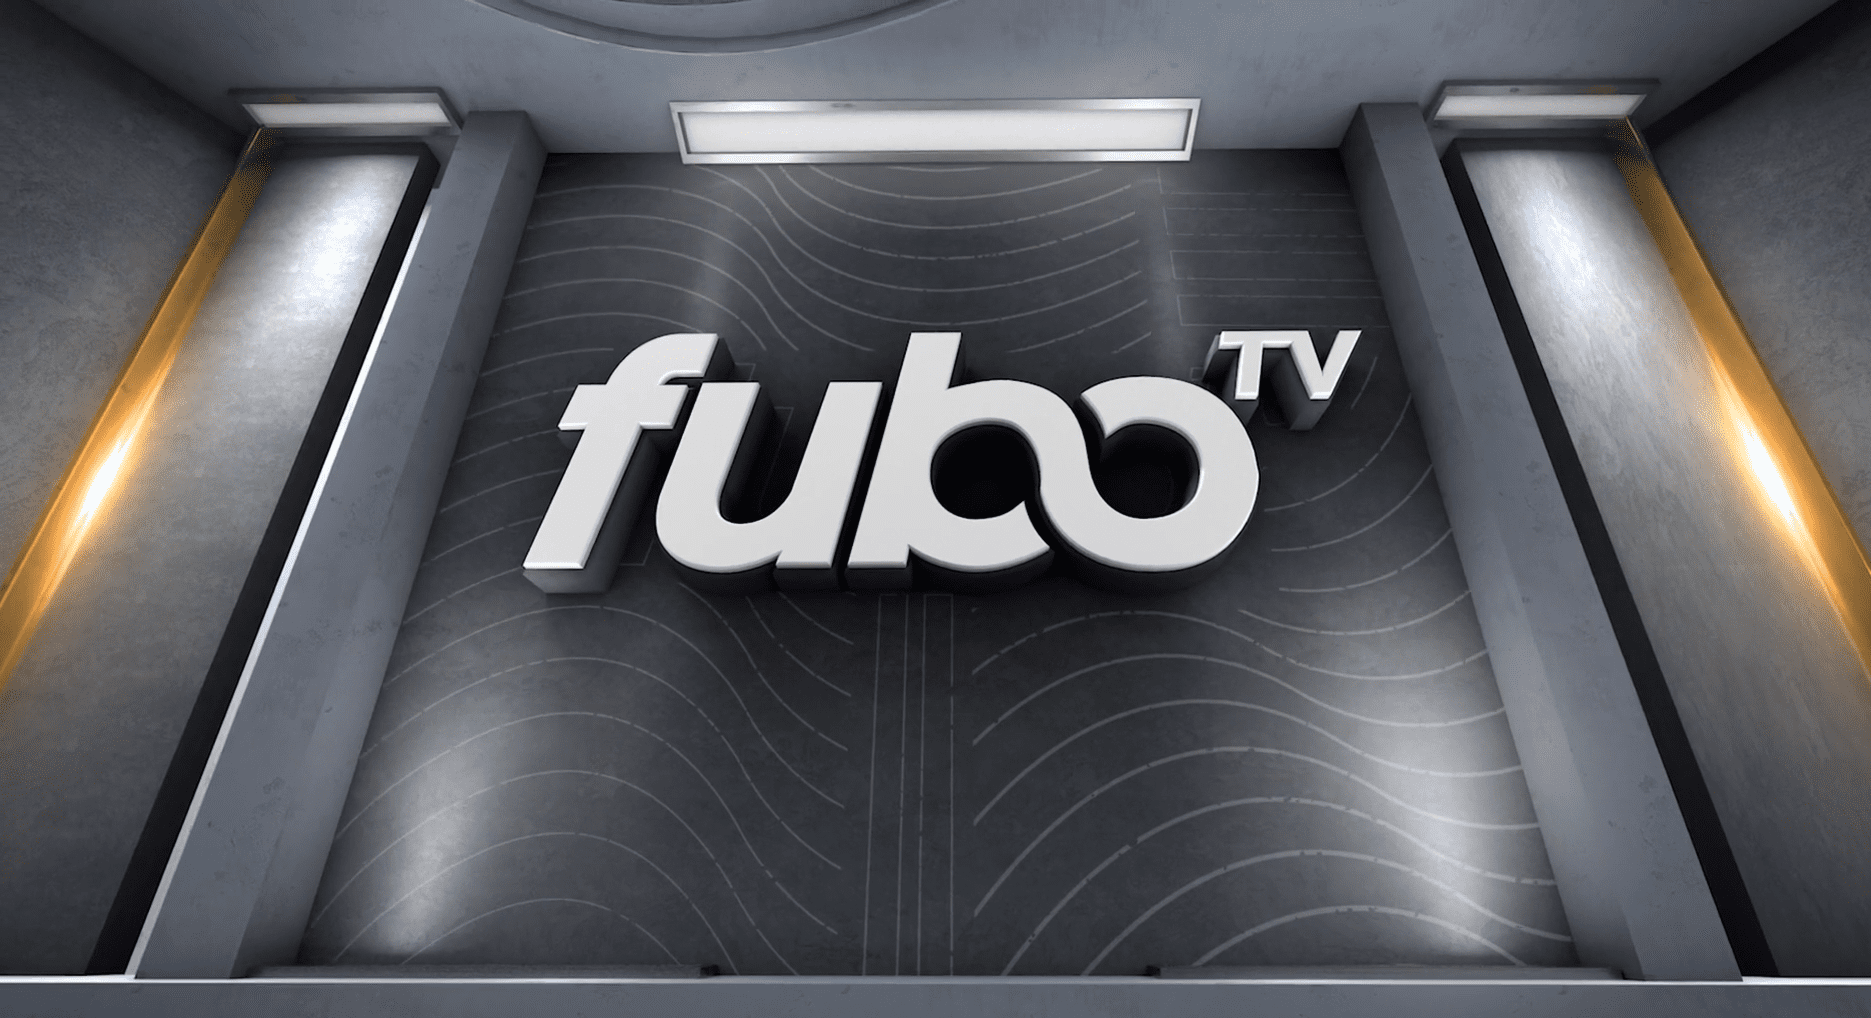 FuboTV